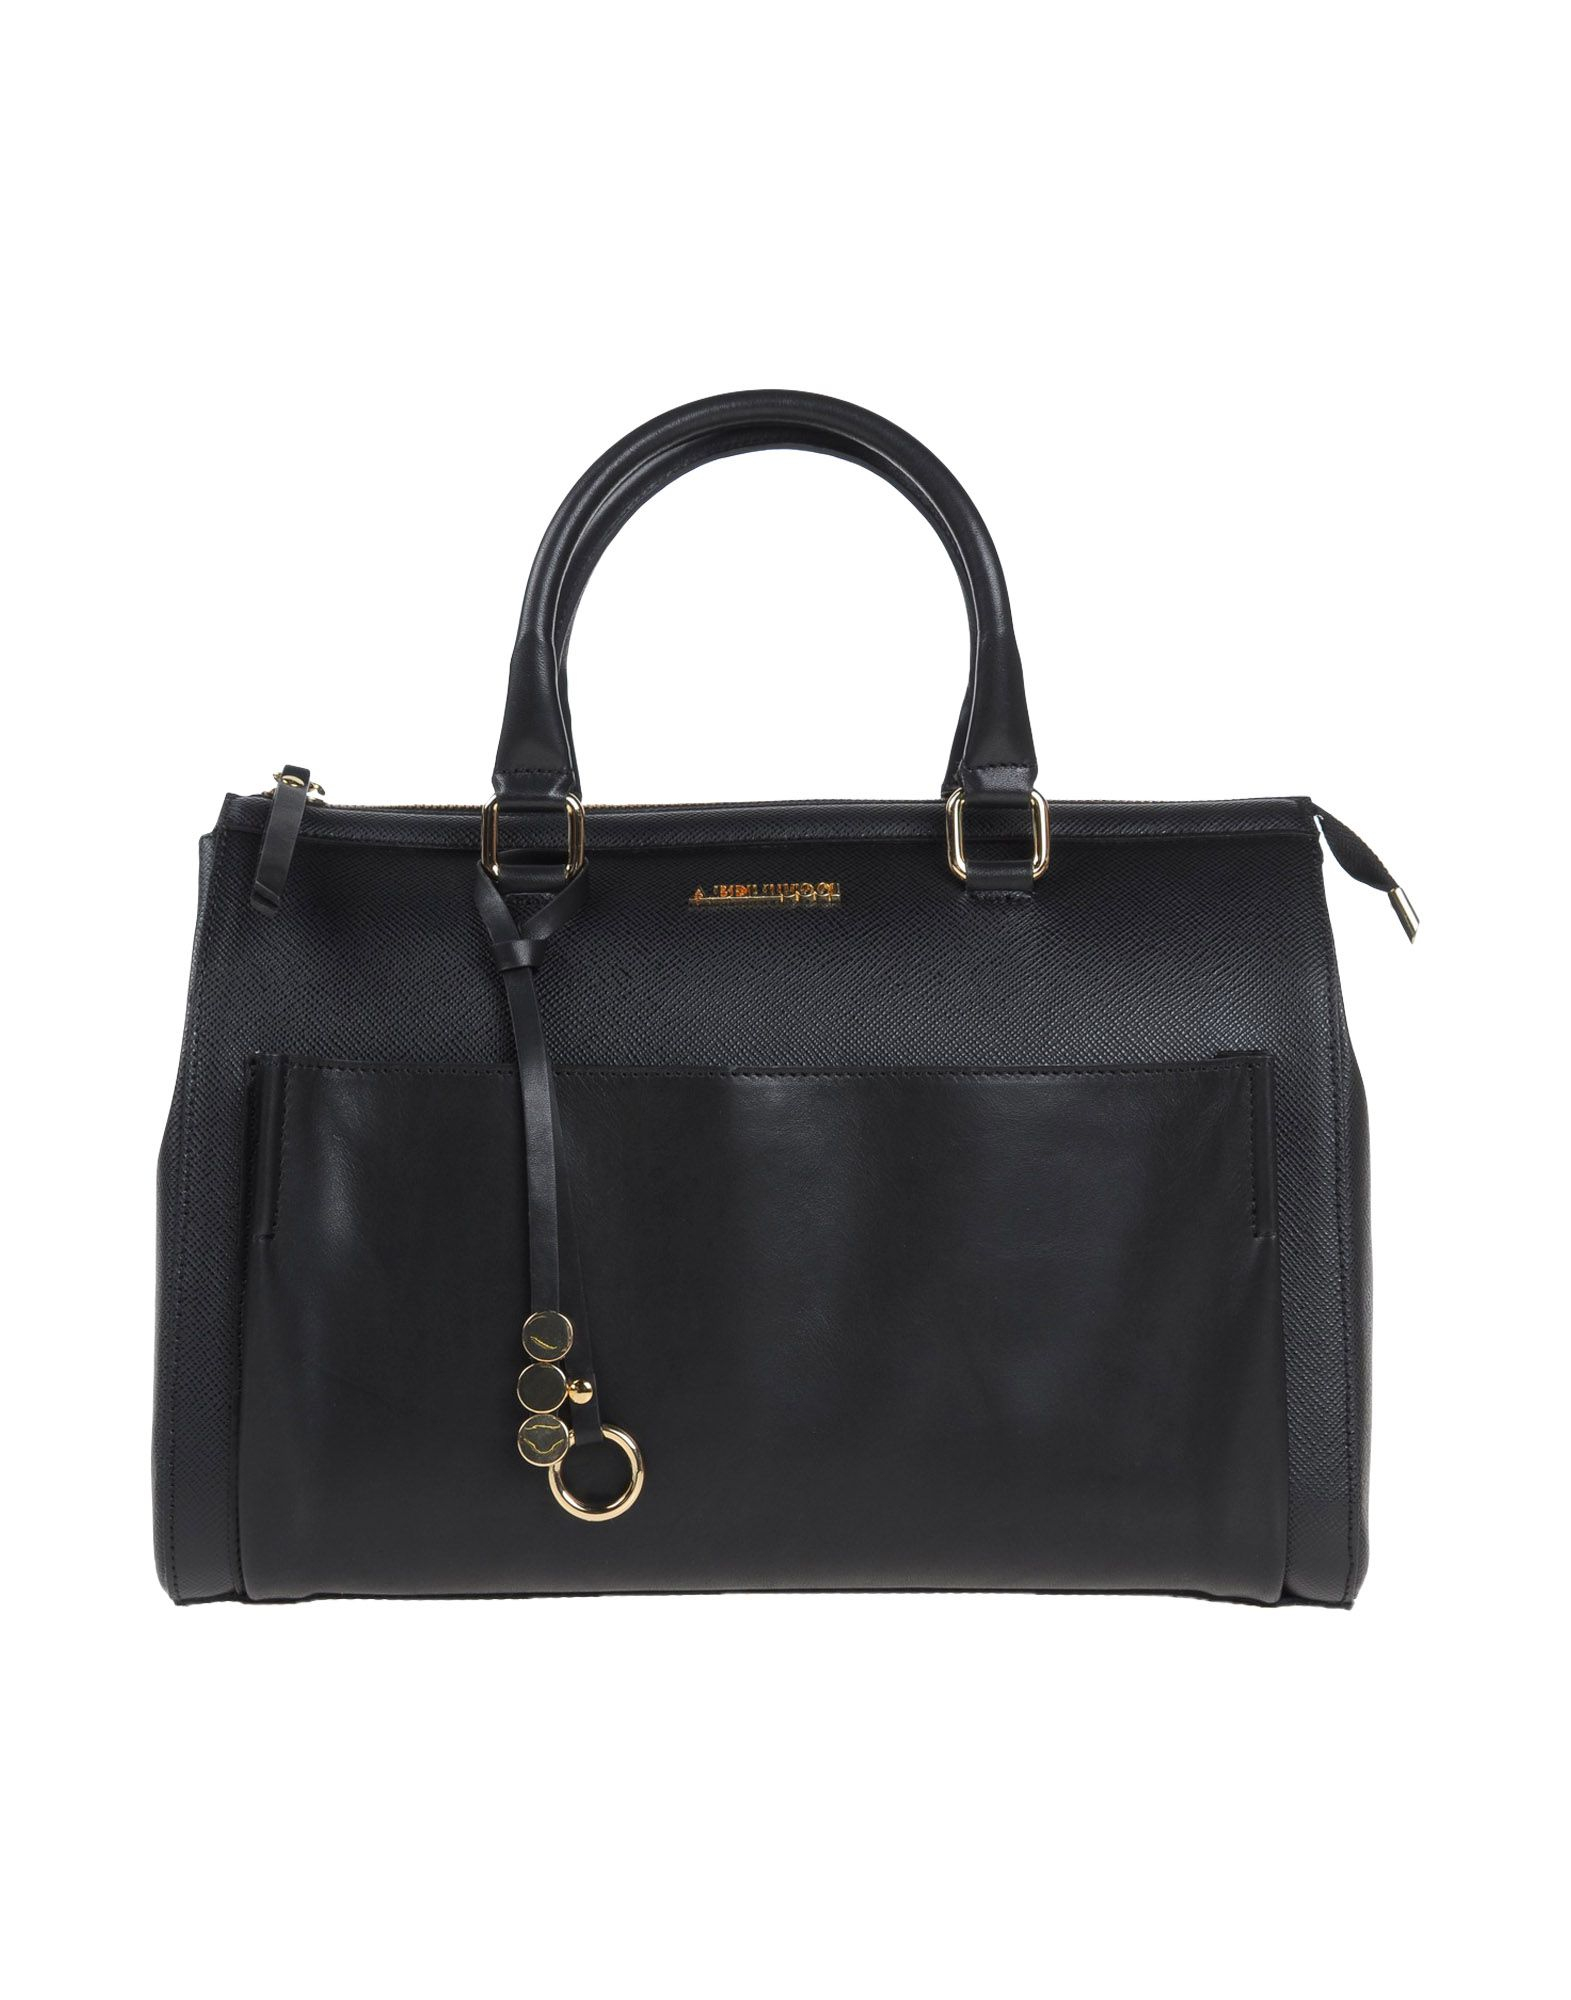 Lyst - Ab Asia Bellucci Handbag in Black